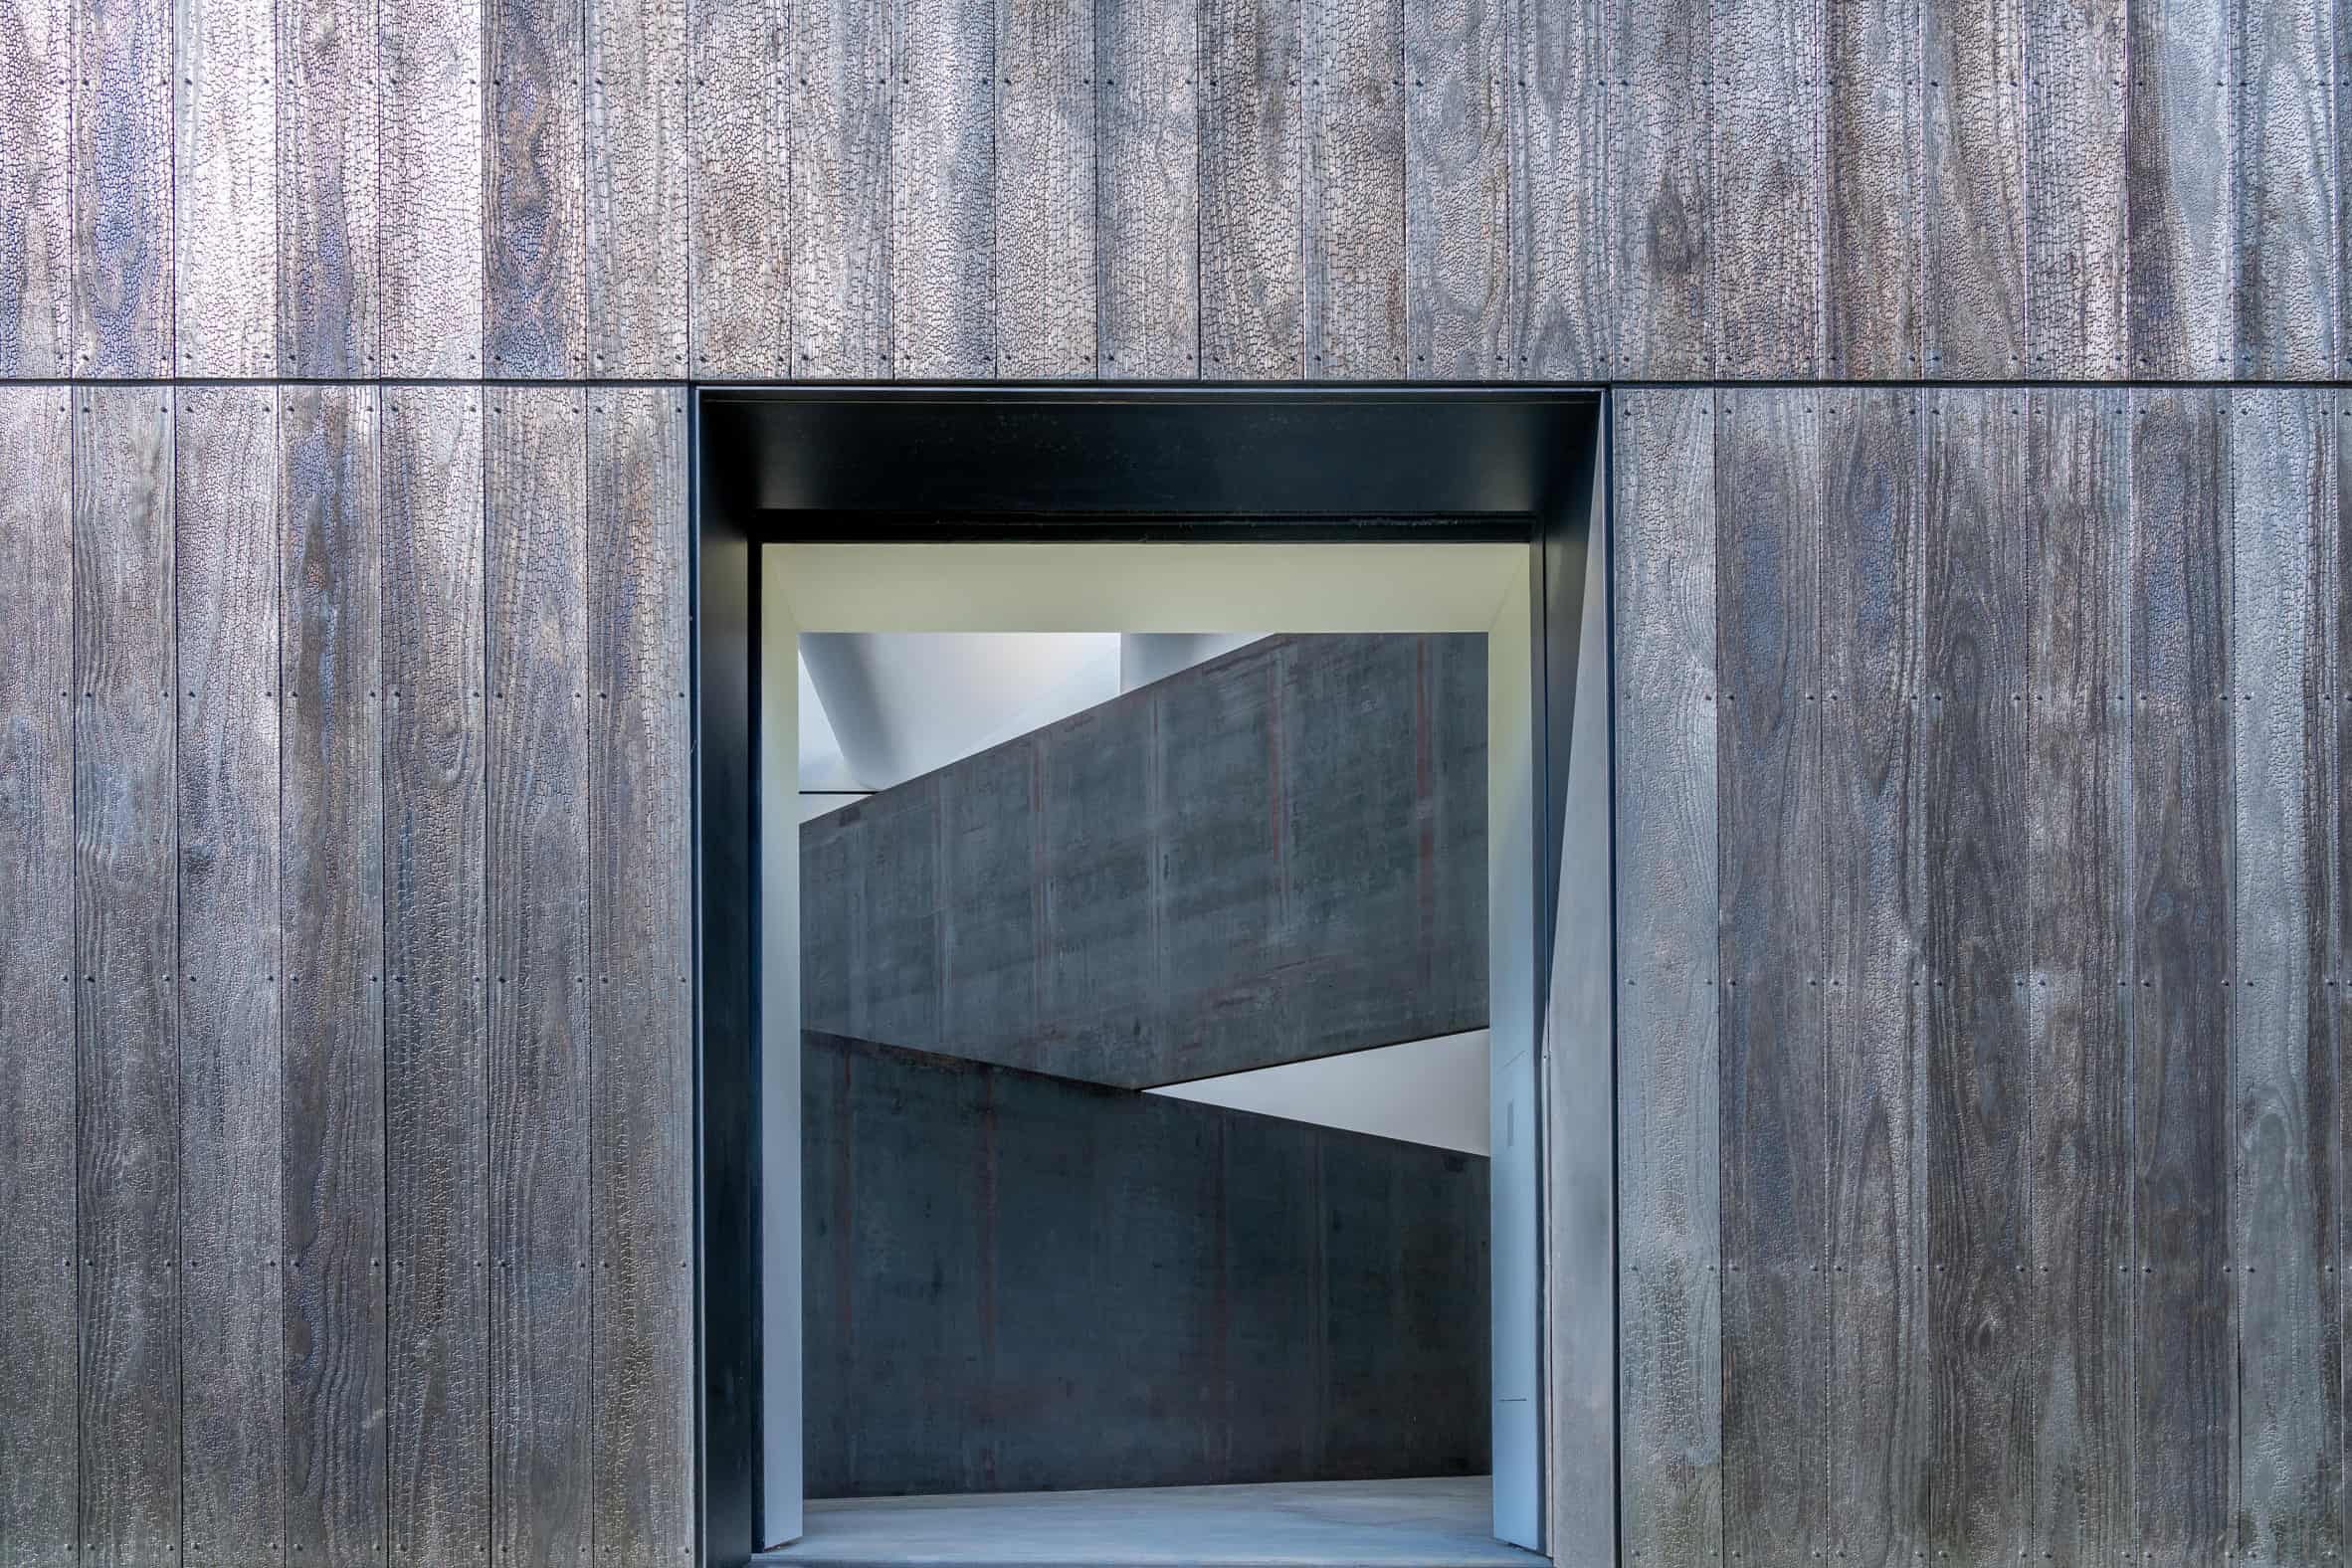 Houten paviljoen voor sculptuur van Richard Serra